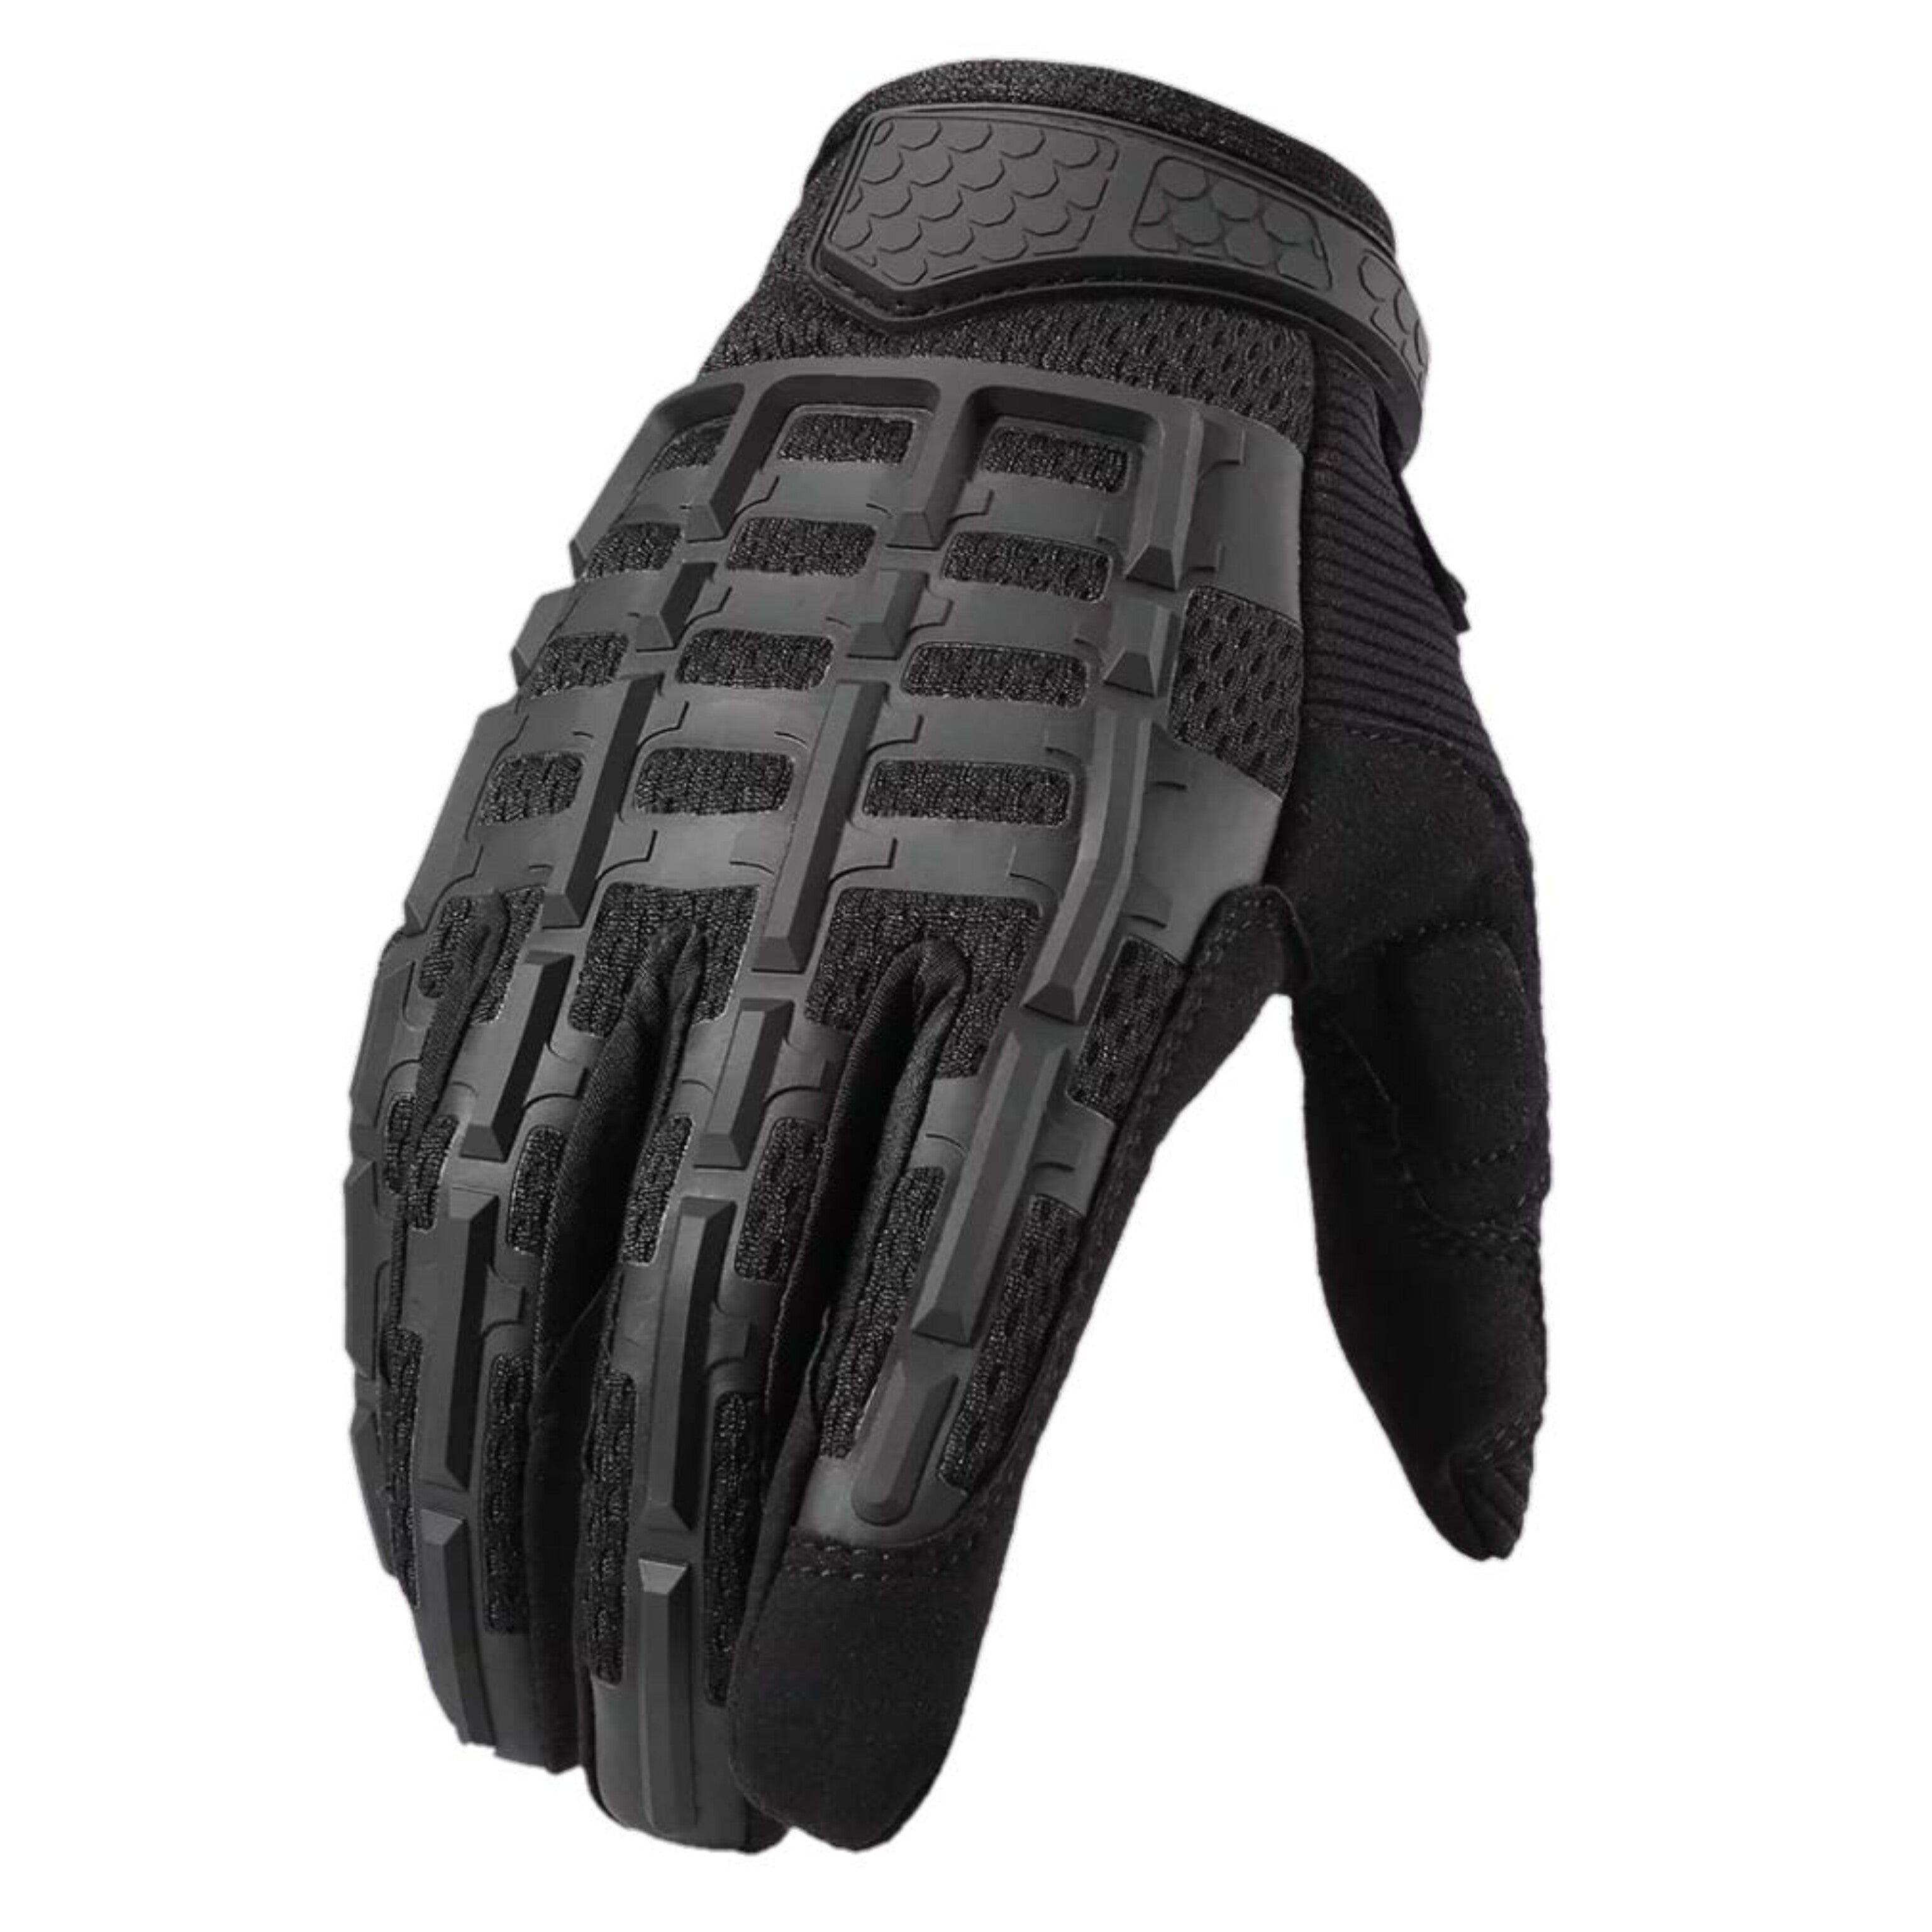 Skeleton Gloves - Black